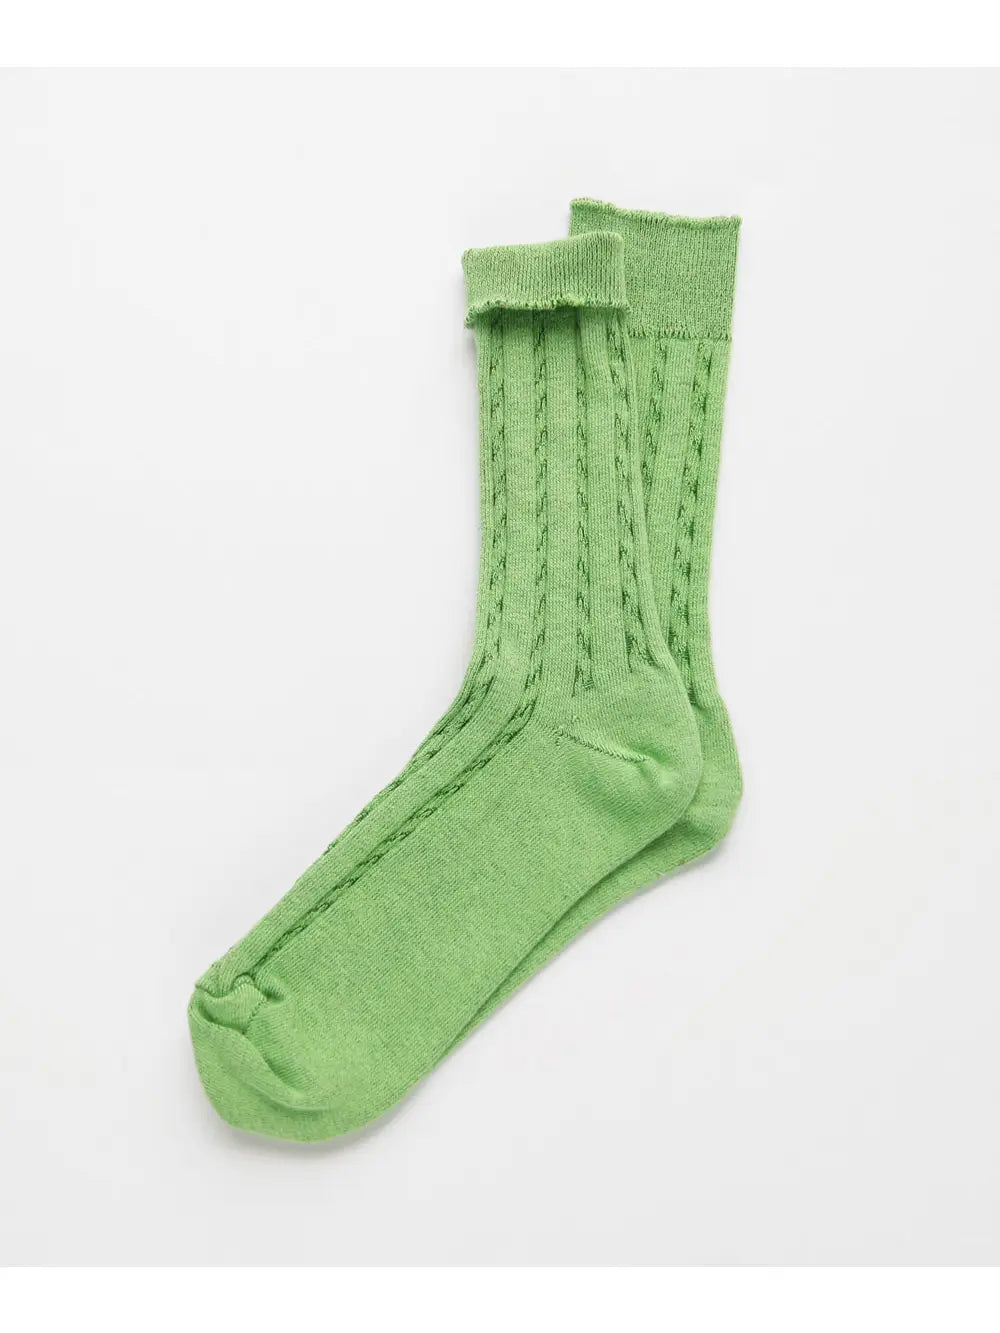 Twisted knit socks by OKAYOK